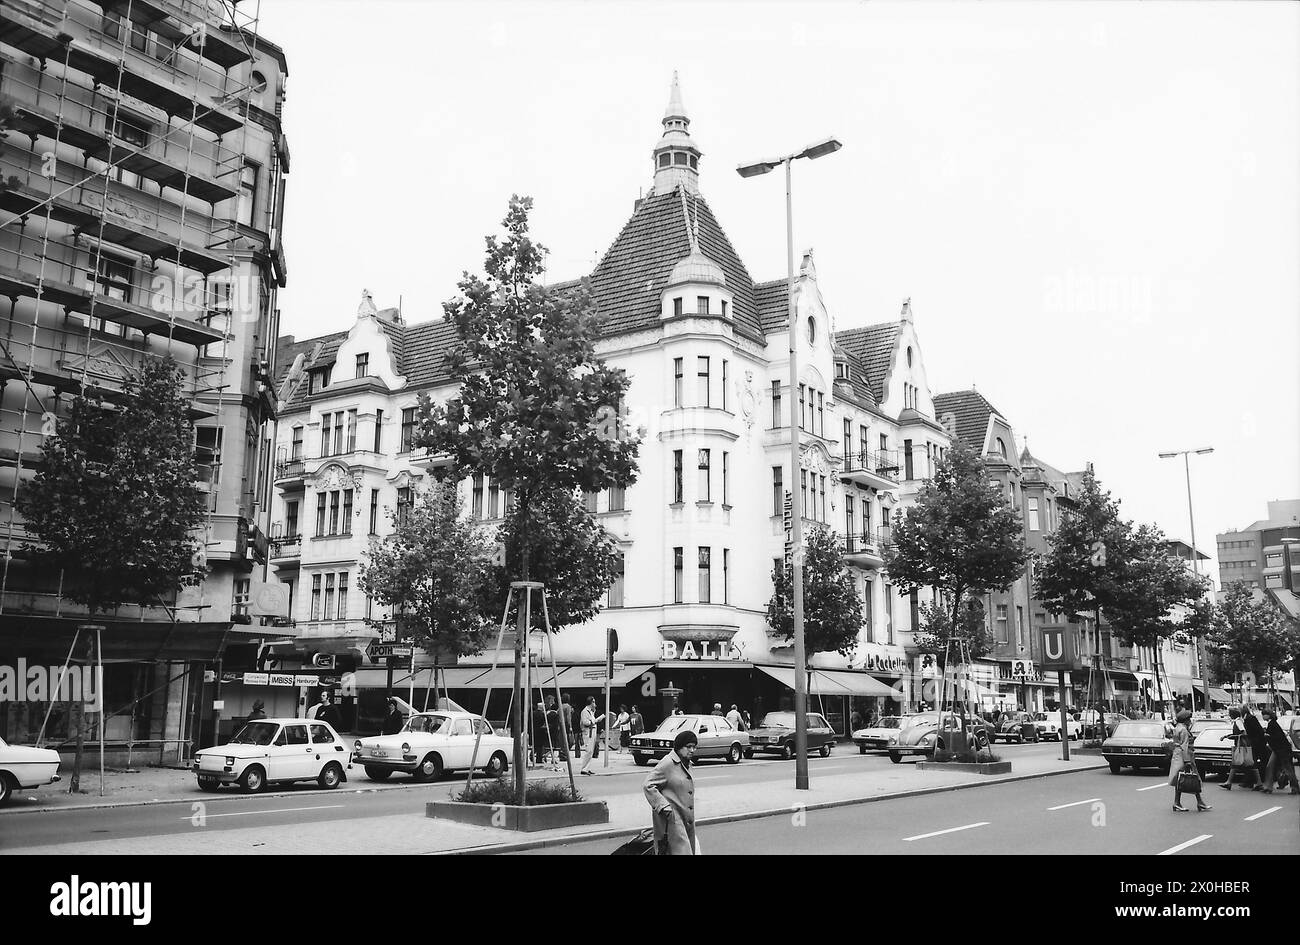 Schlossstraße à Berlin Steglitz est l'une des principales rues commerçantes de Berlin Ouest. En 1980, il y avait encore trois grands magasins et un centre commercial. Le pinceau à bière est rogné au dos de l'image. [traduction automatique] Banque D'Images